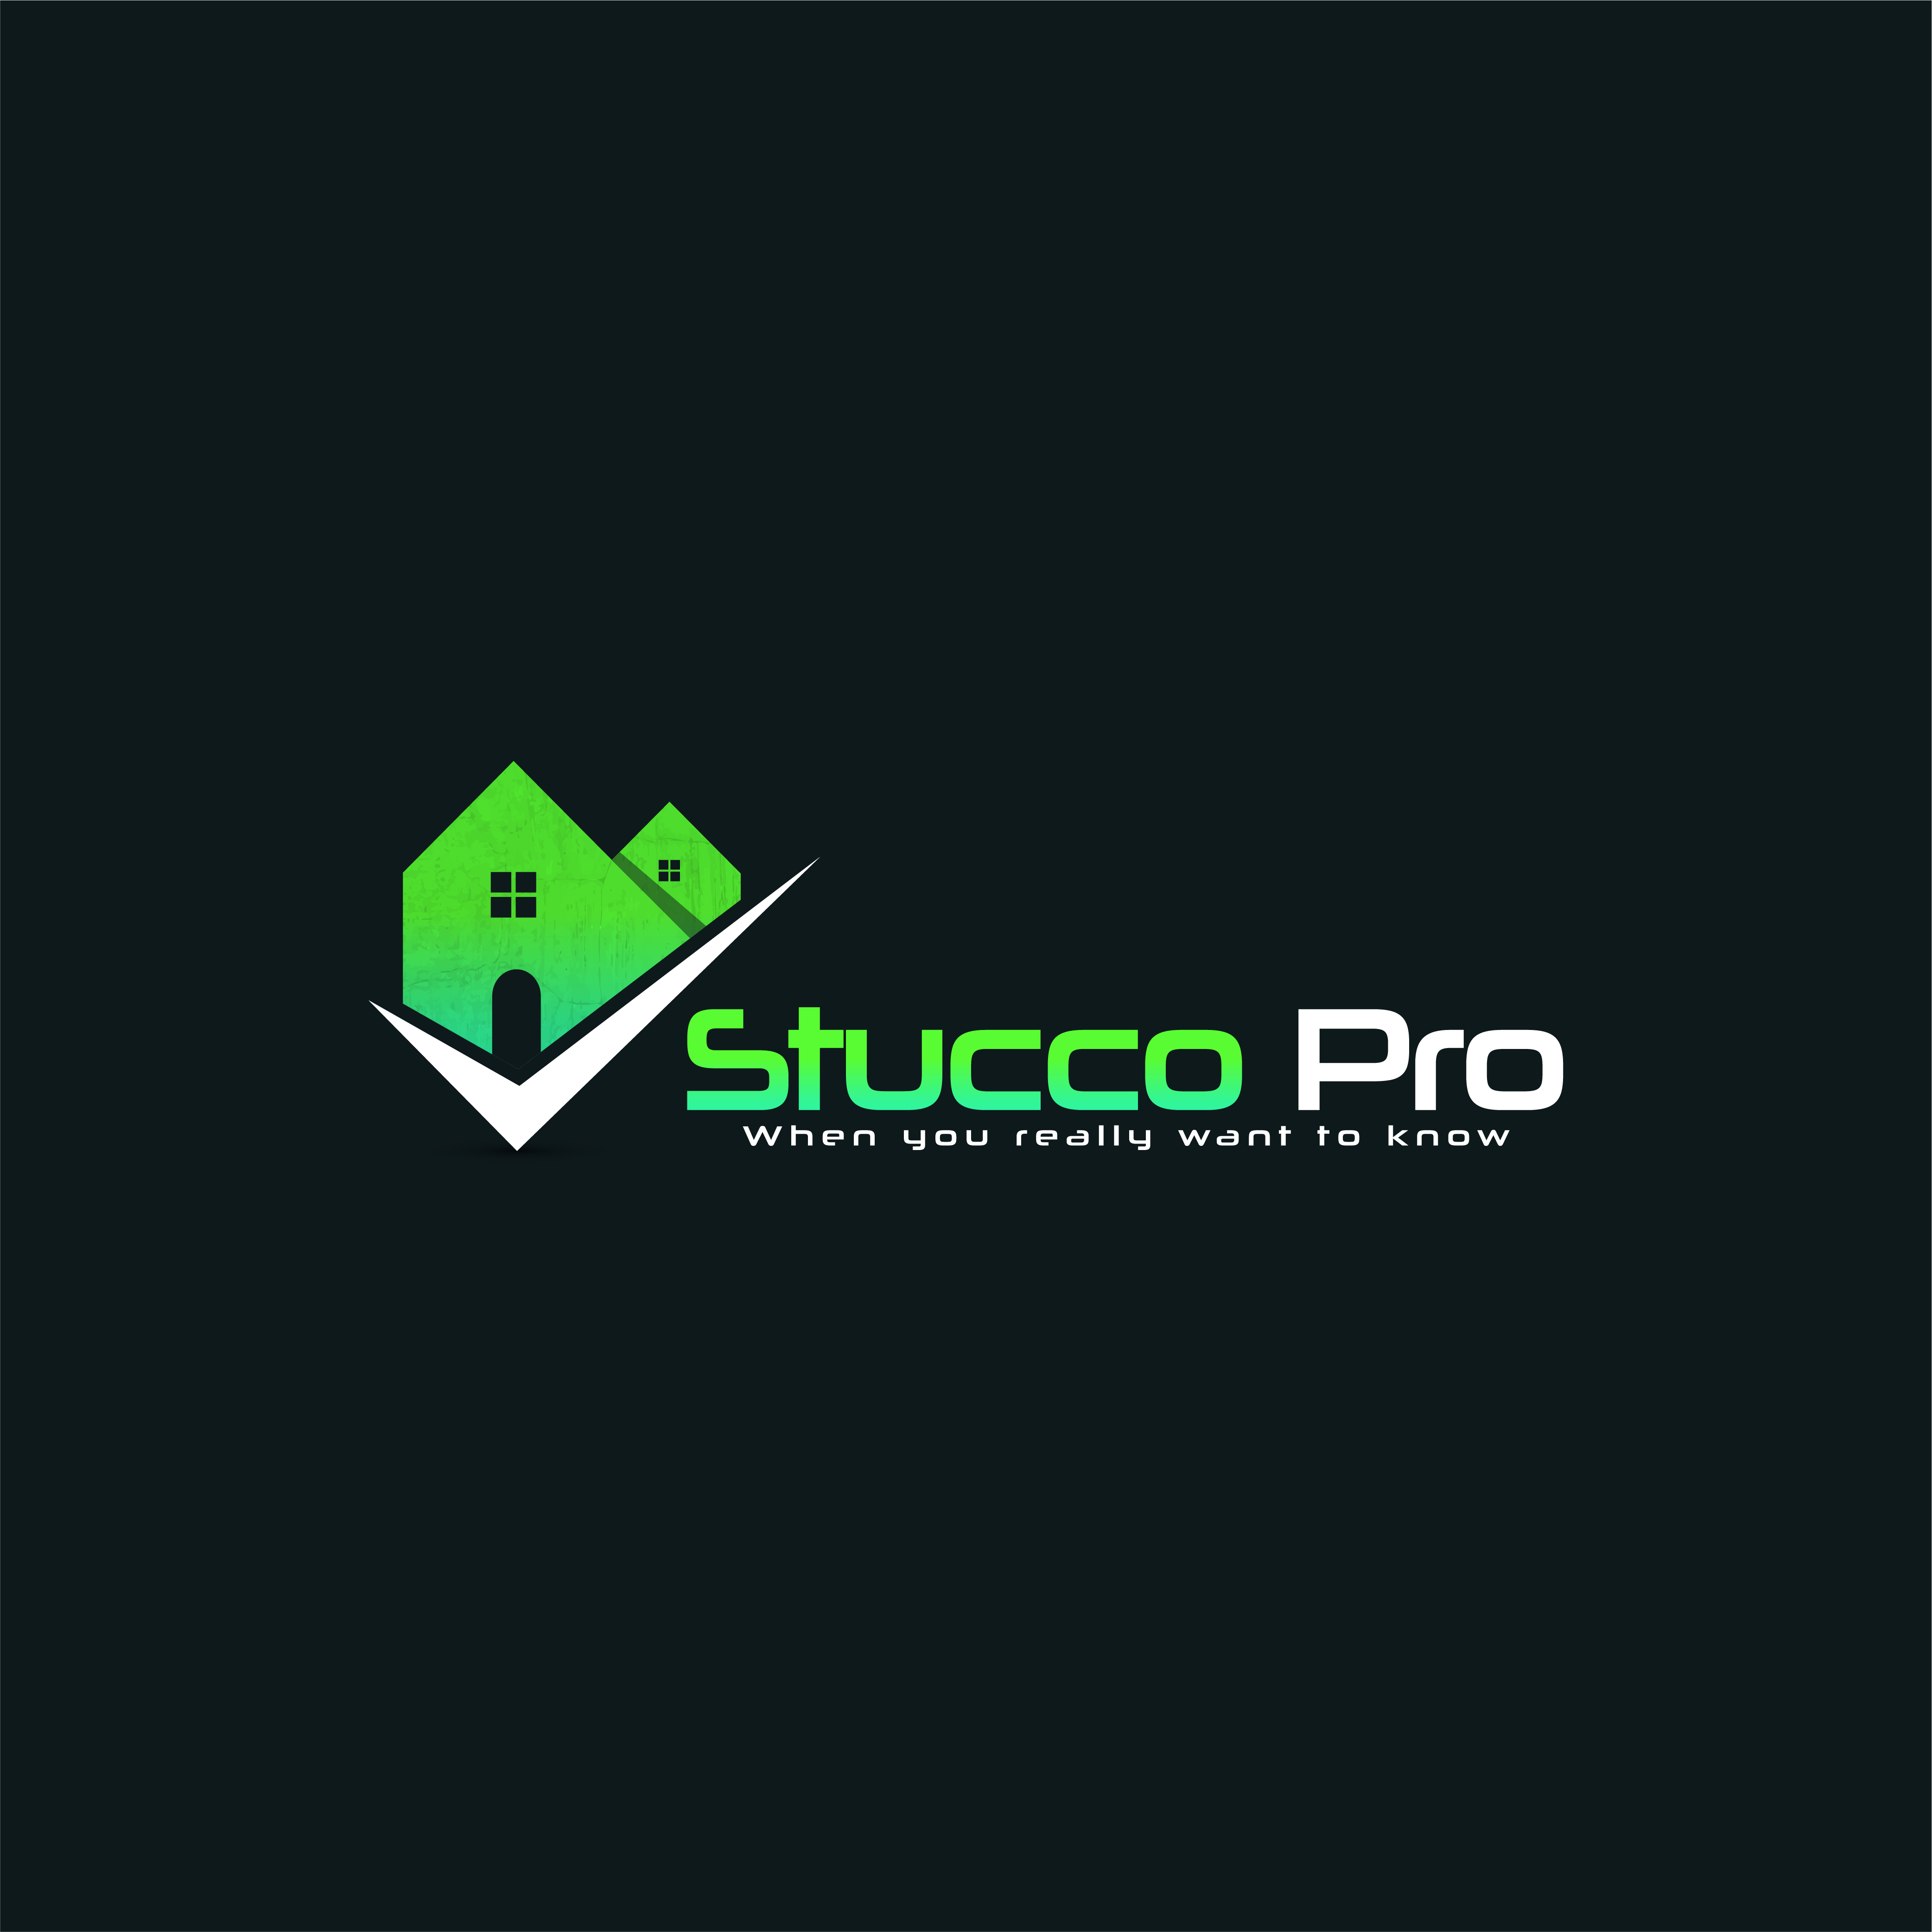 www.Stuccopro.net